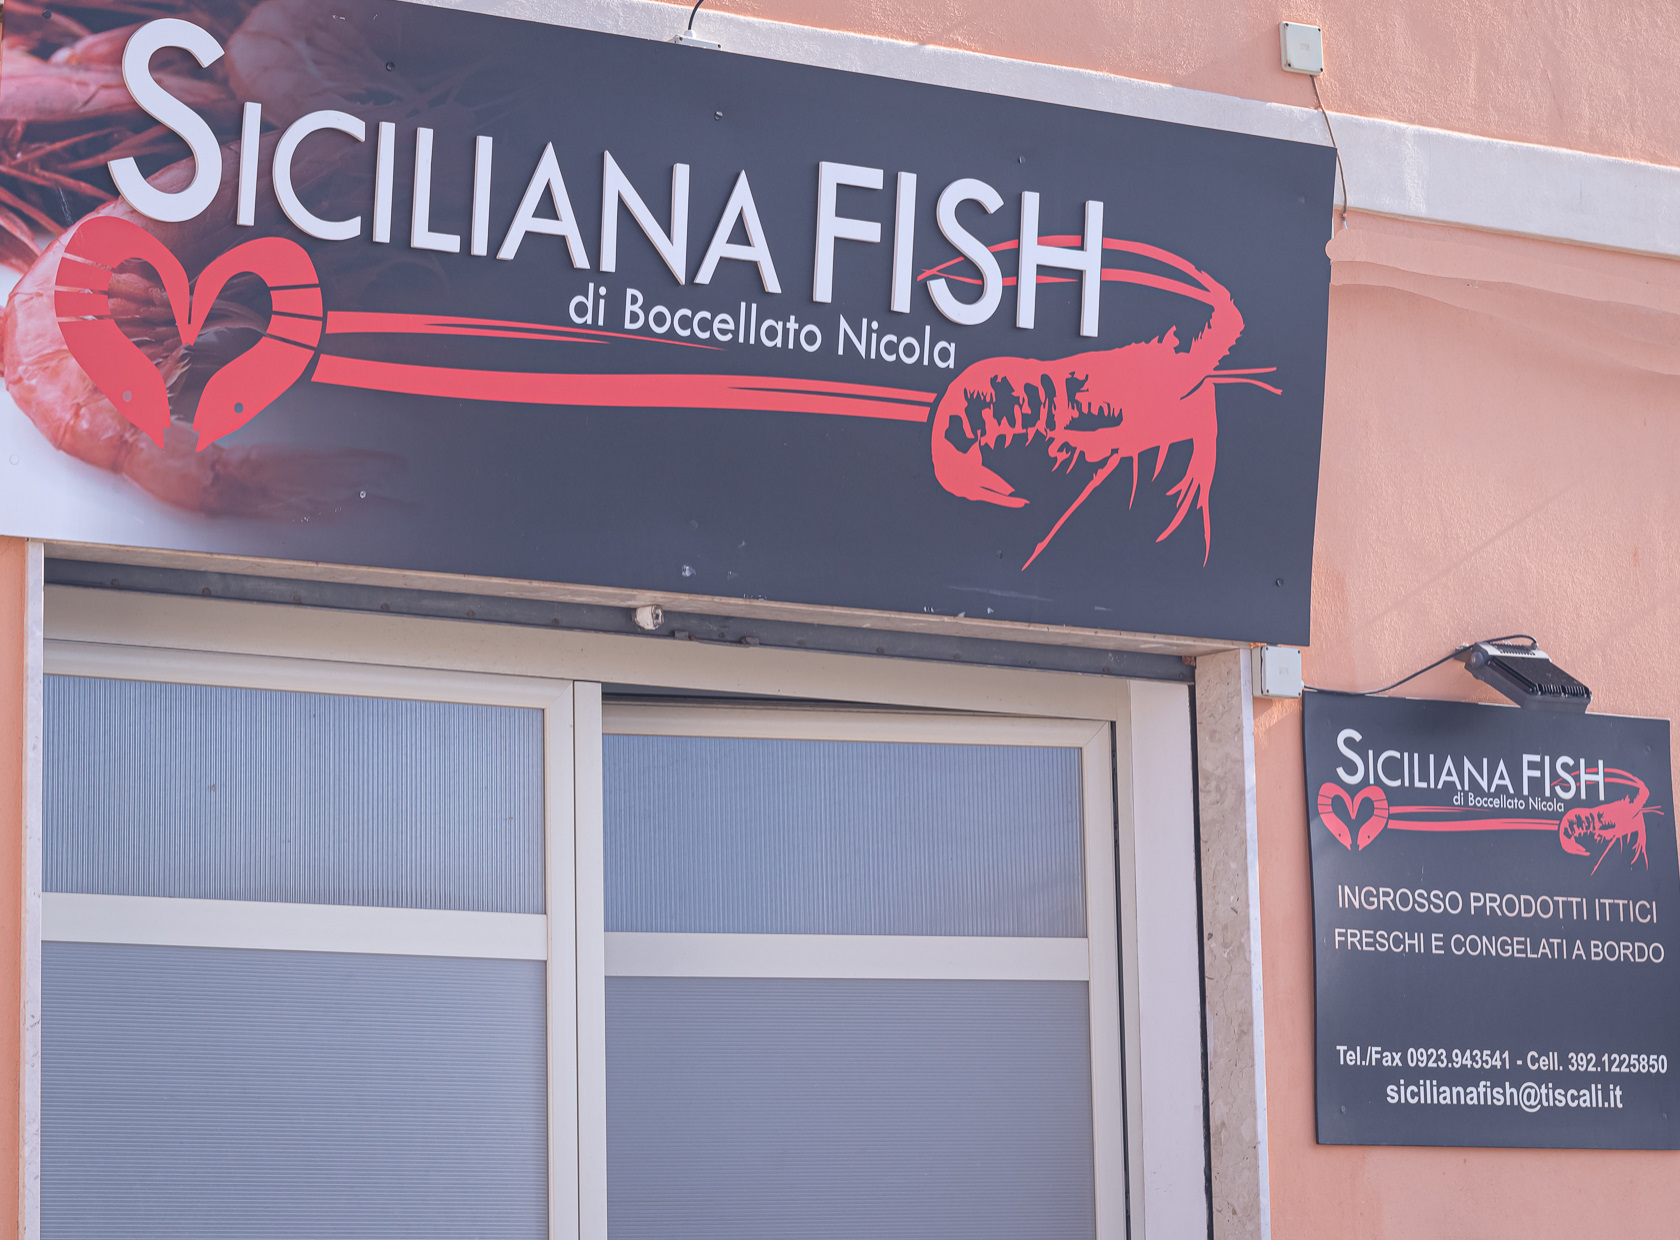 Siciliana Fish insegna, ingrosso vendita prodotti ittici Mazara del Vallo